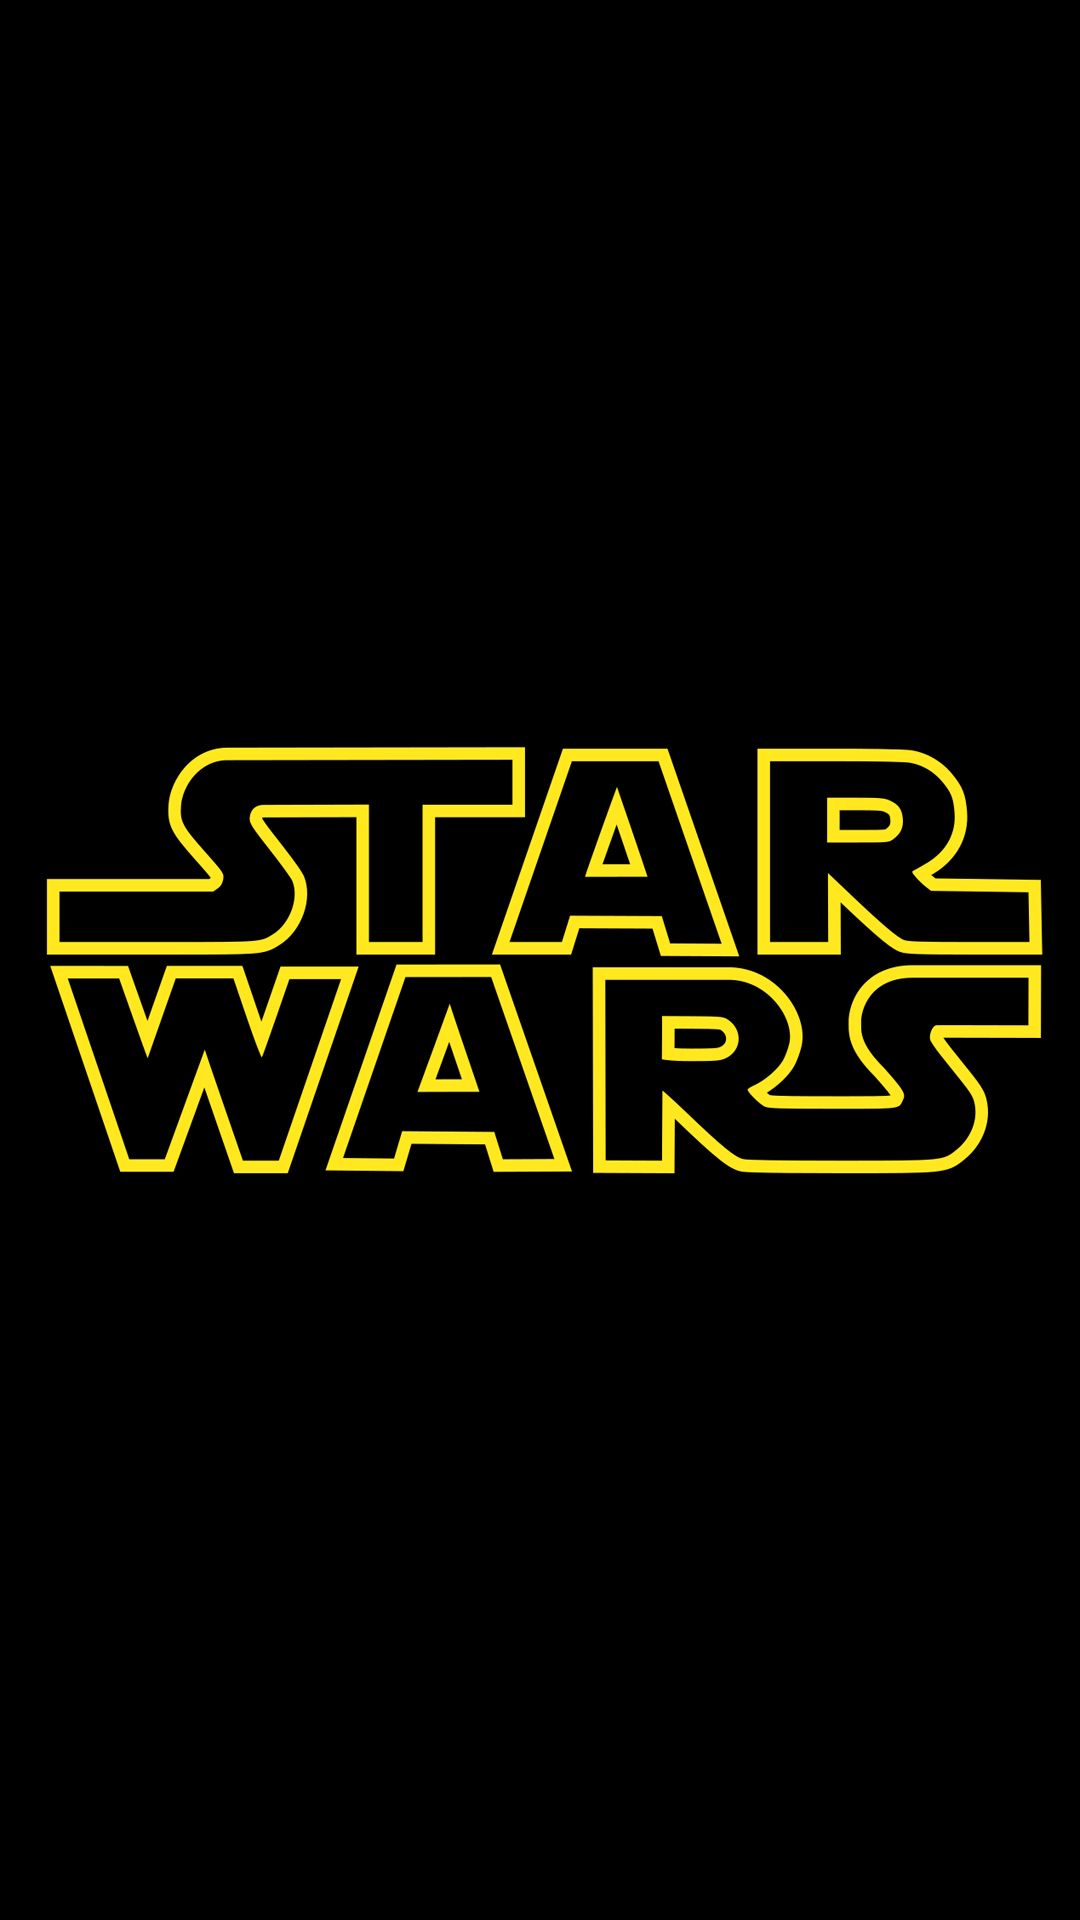 Una imagen vertical del banner clásico de la franquicia Star Wars.